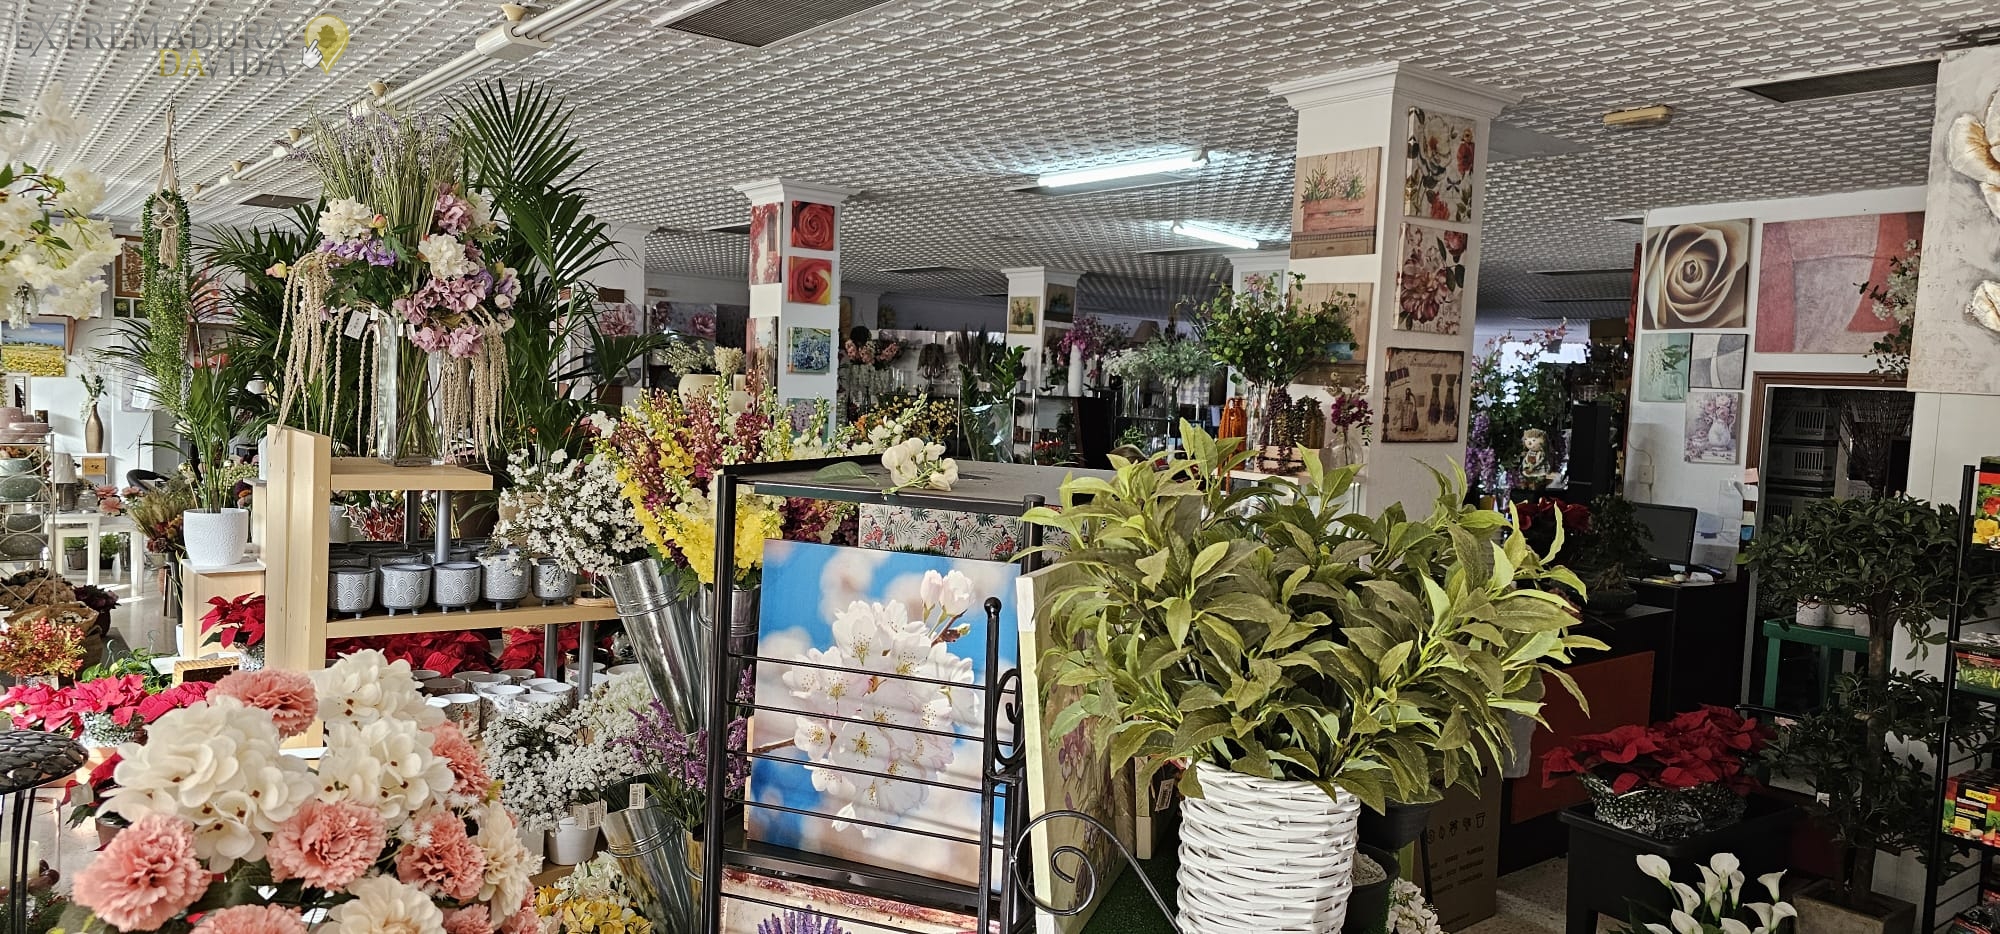 La mejor tienda de decoración de Almendralejo Floristería Lis